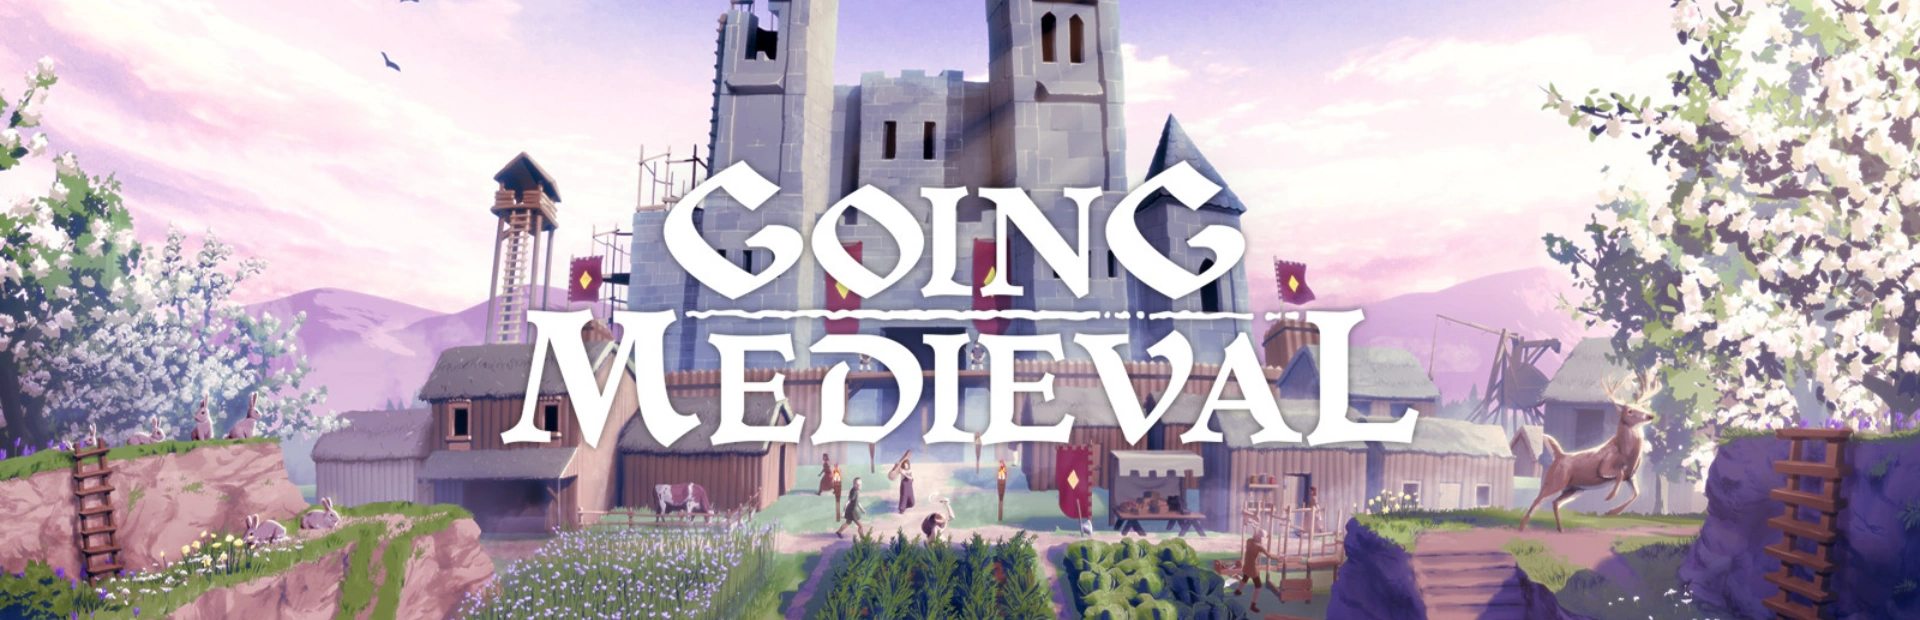 دانلود بازی Going Medieval برای کامپیوتر | گیمباتو